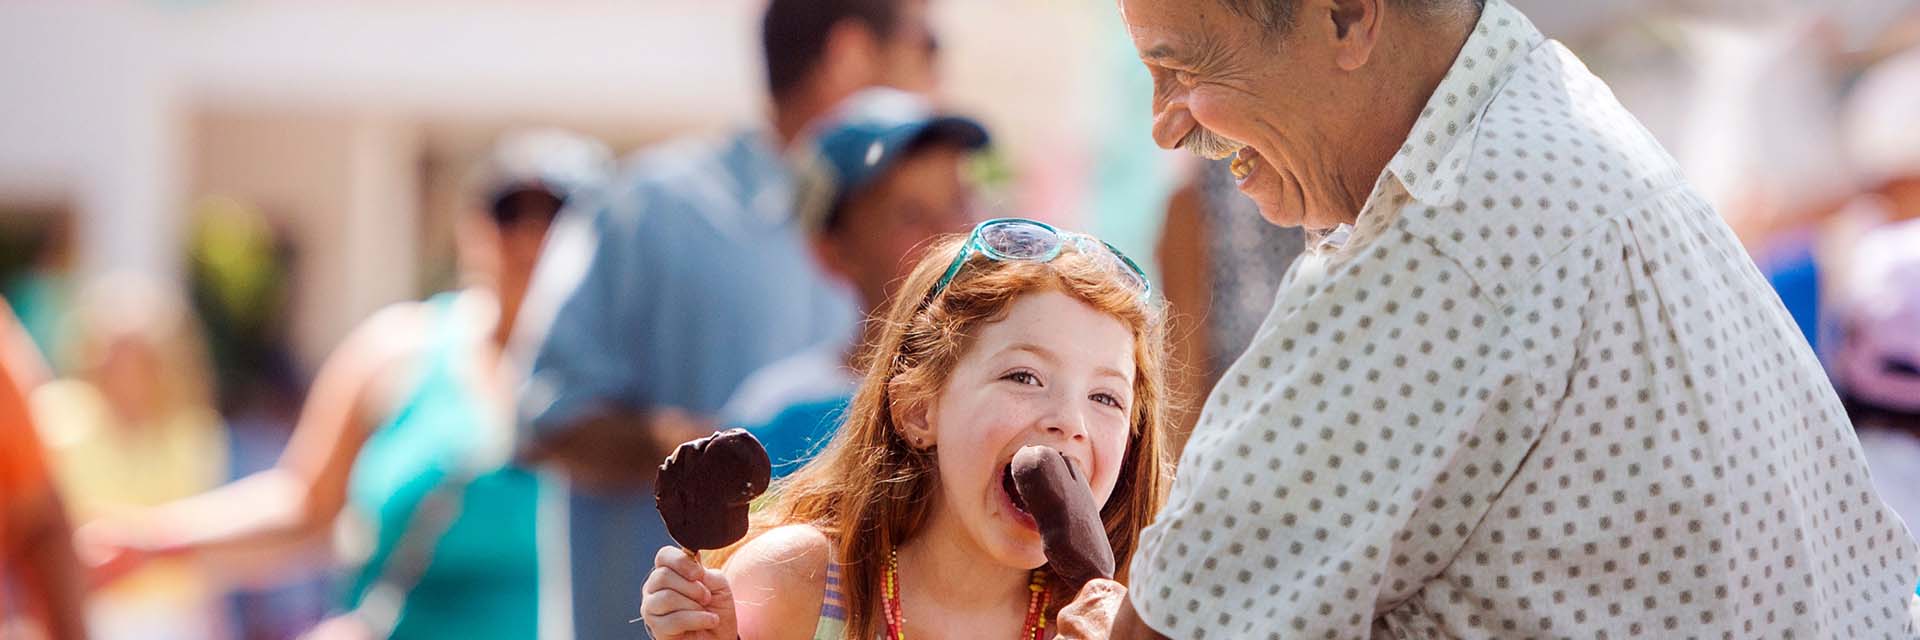 Disney Boardwalk - ice cream